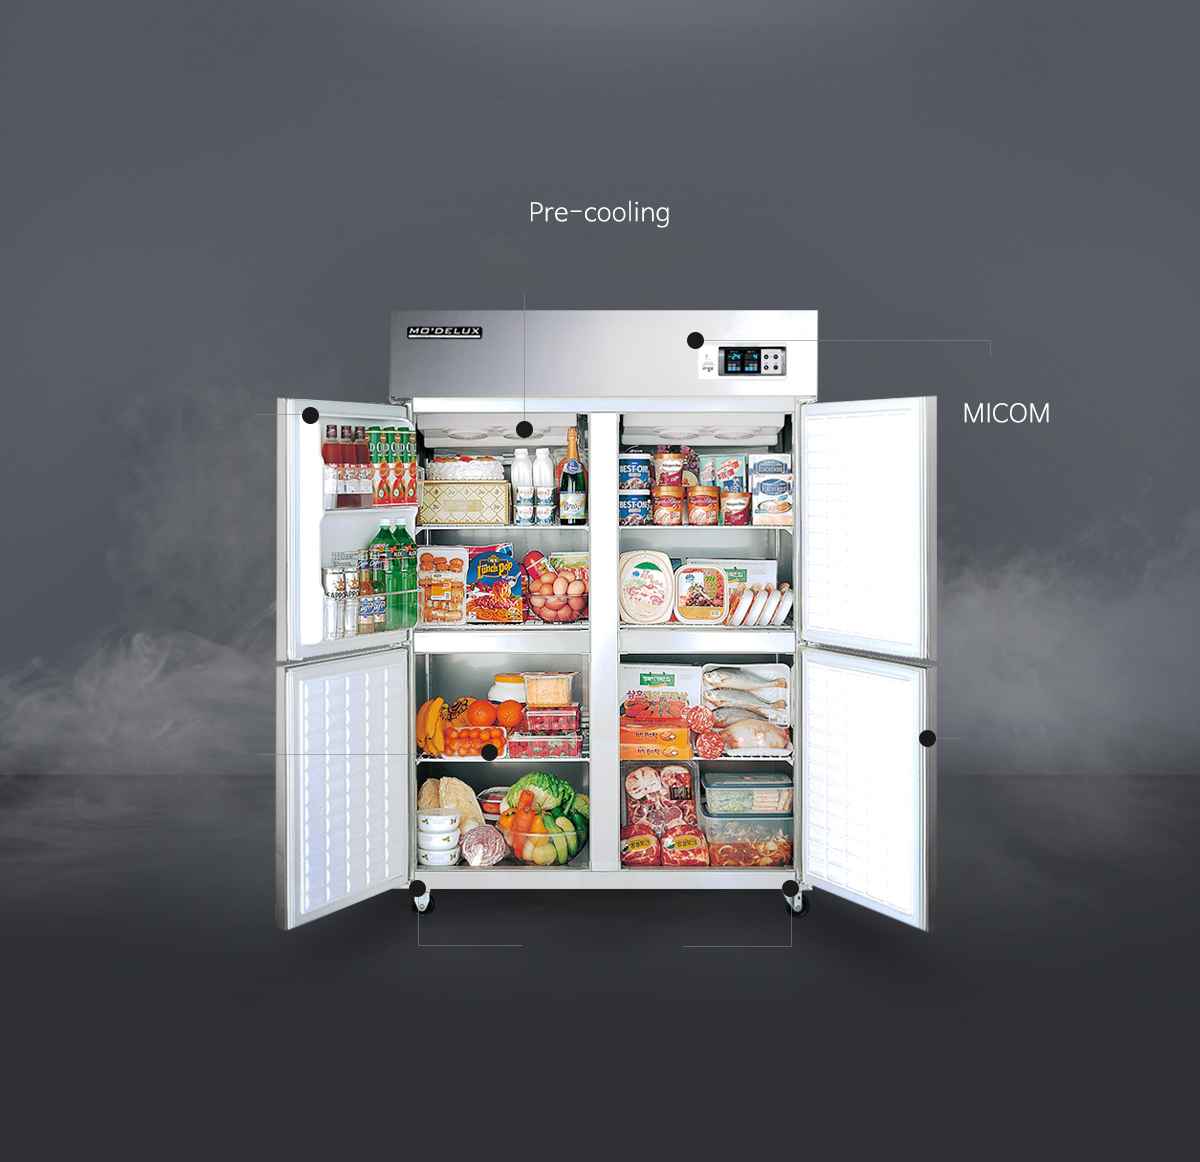 Bàn lạnh Modelux, Bàn mát Modelux, Modelux, Tủ lạnh công nghiệp, Tủ Lạnh Modelux, Tủ lạnh công nghiệp, Tủ mát công nghiệp, Tủ đông công nghiệp, Tủ Modelux